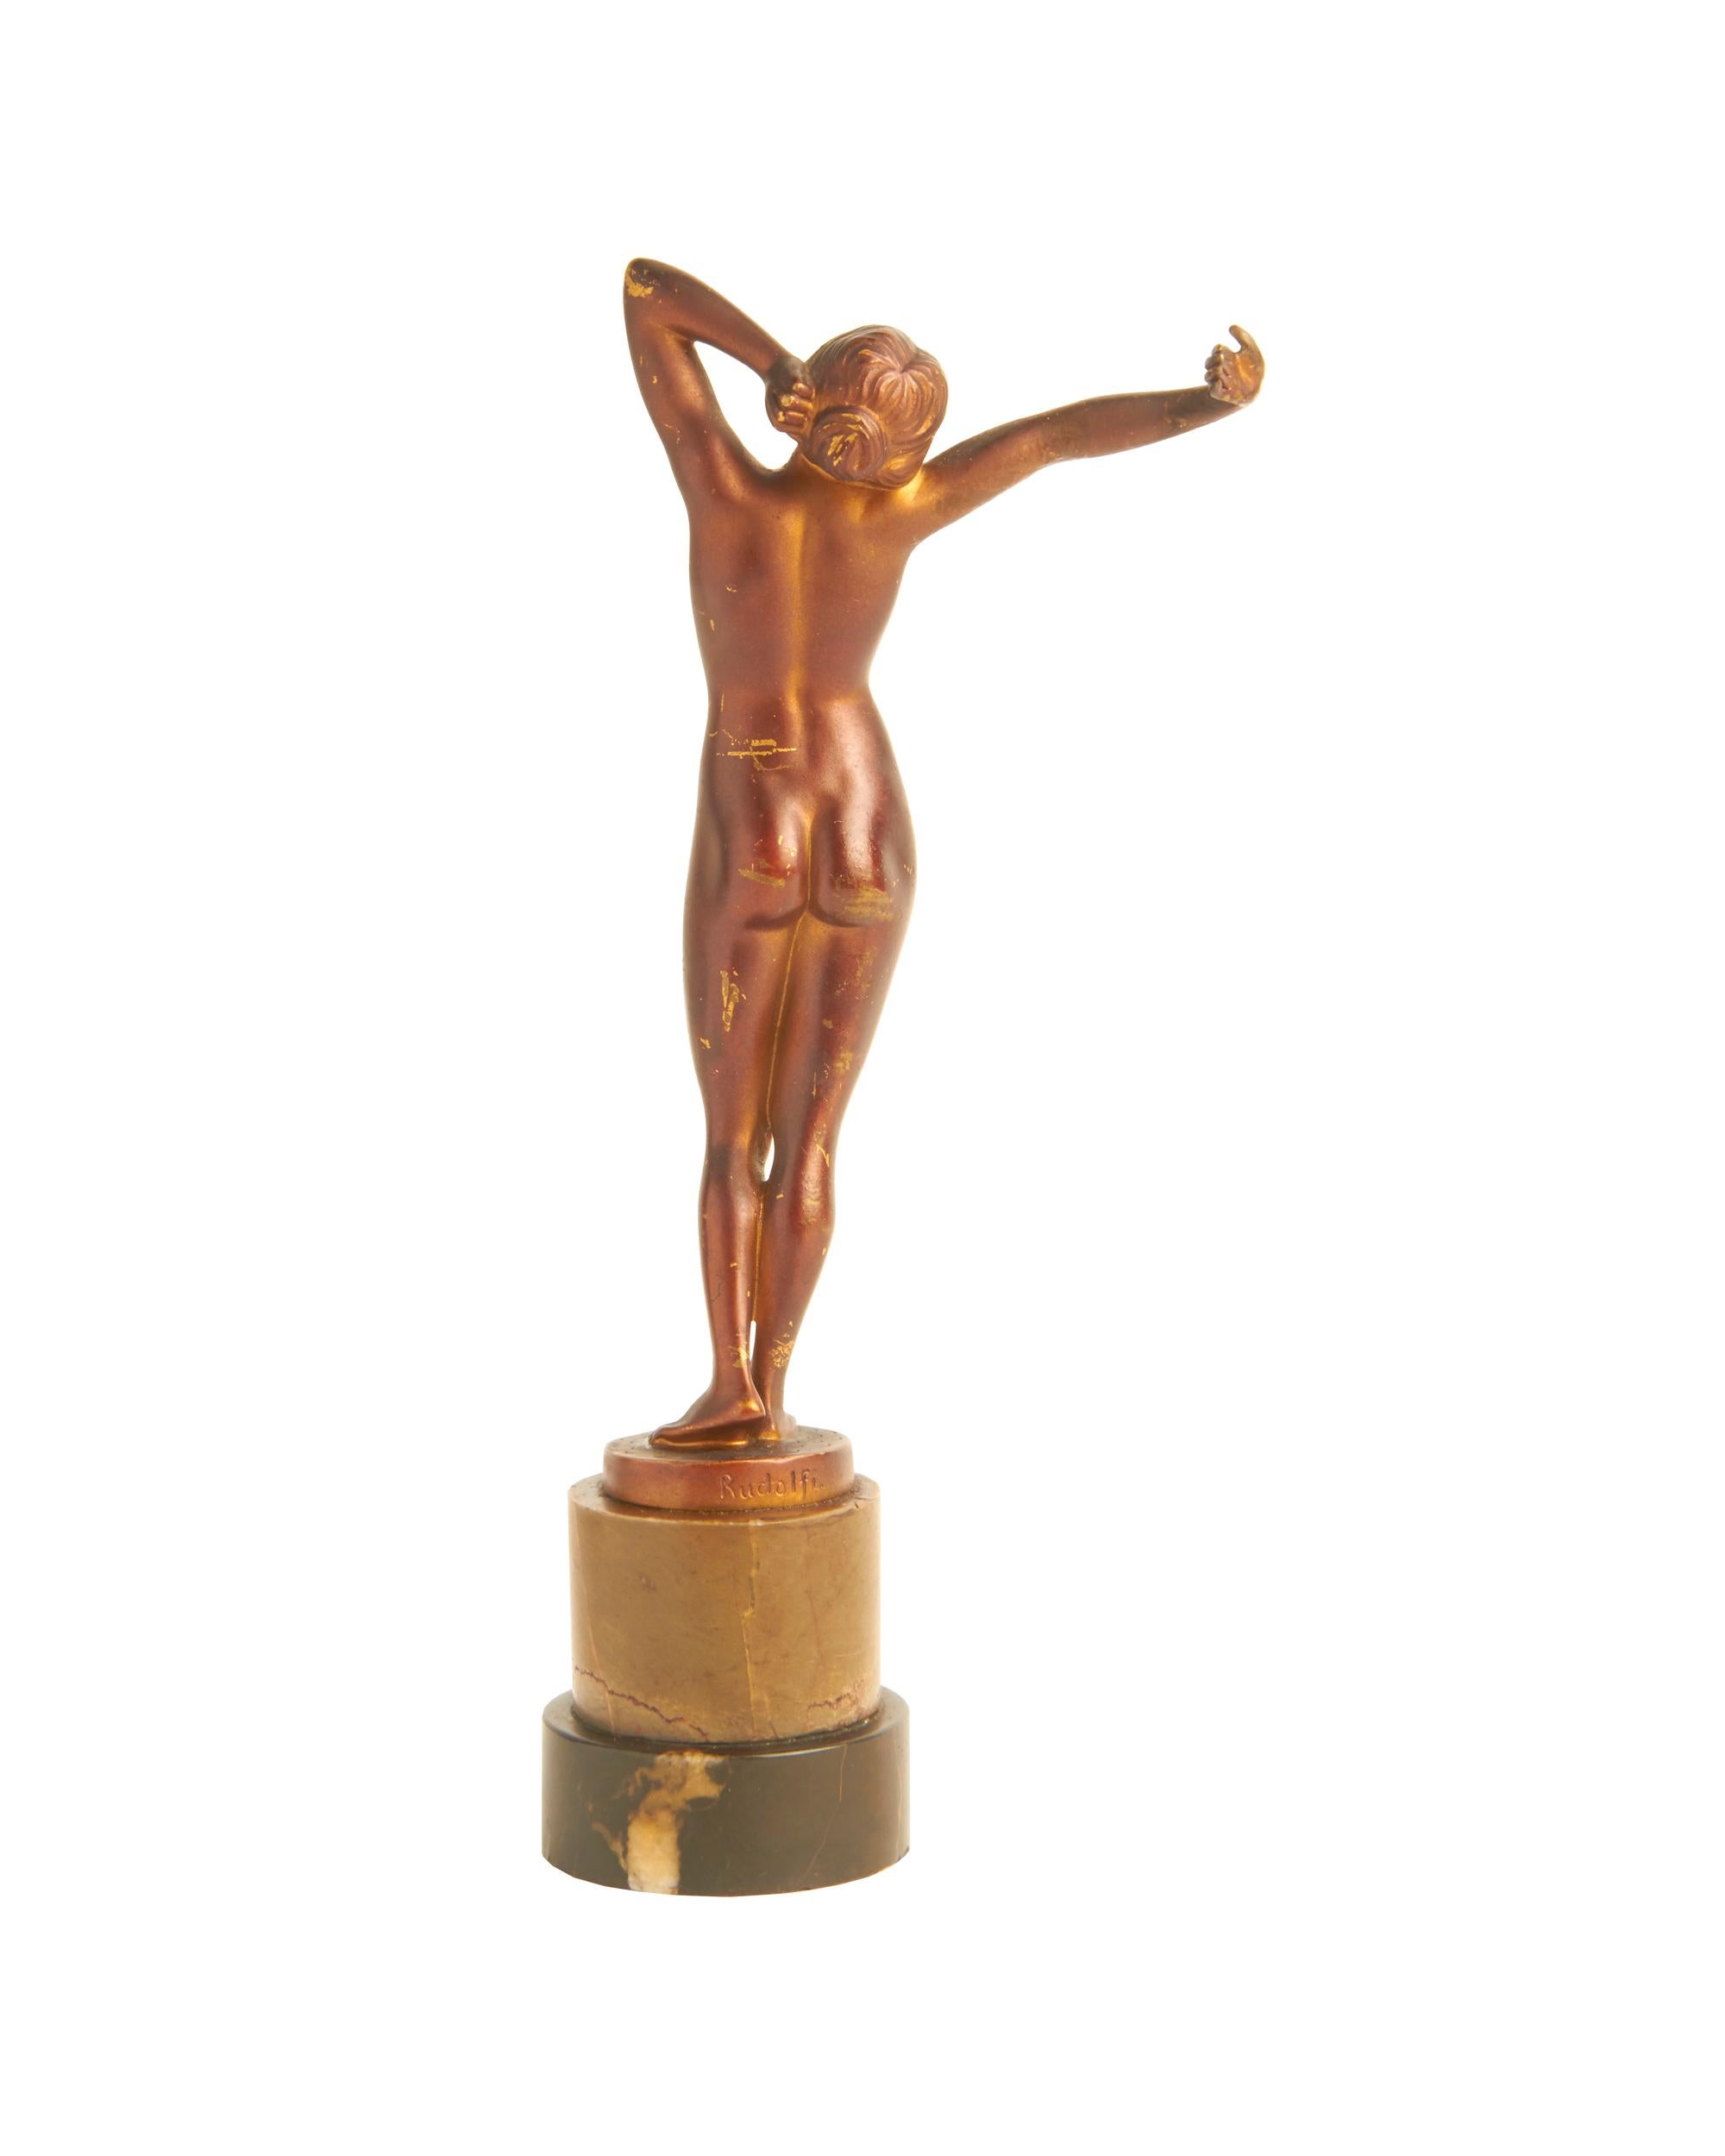 Cast German Art Nouveau Gilt Bronze Female Nude Figurine, The Awakening by Rudolfi